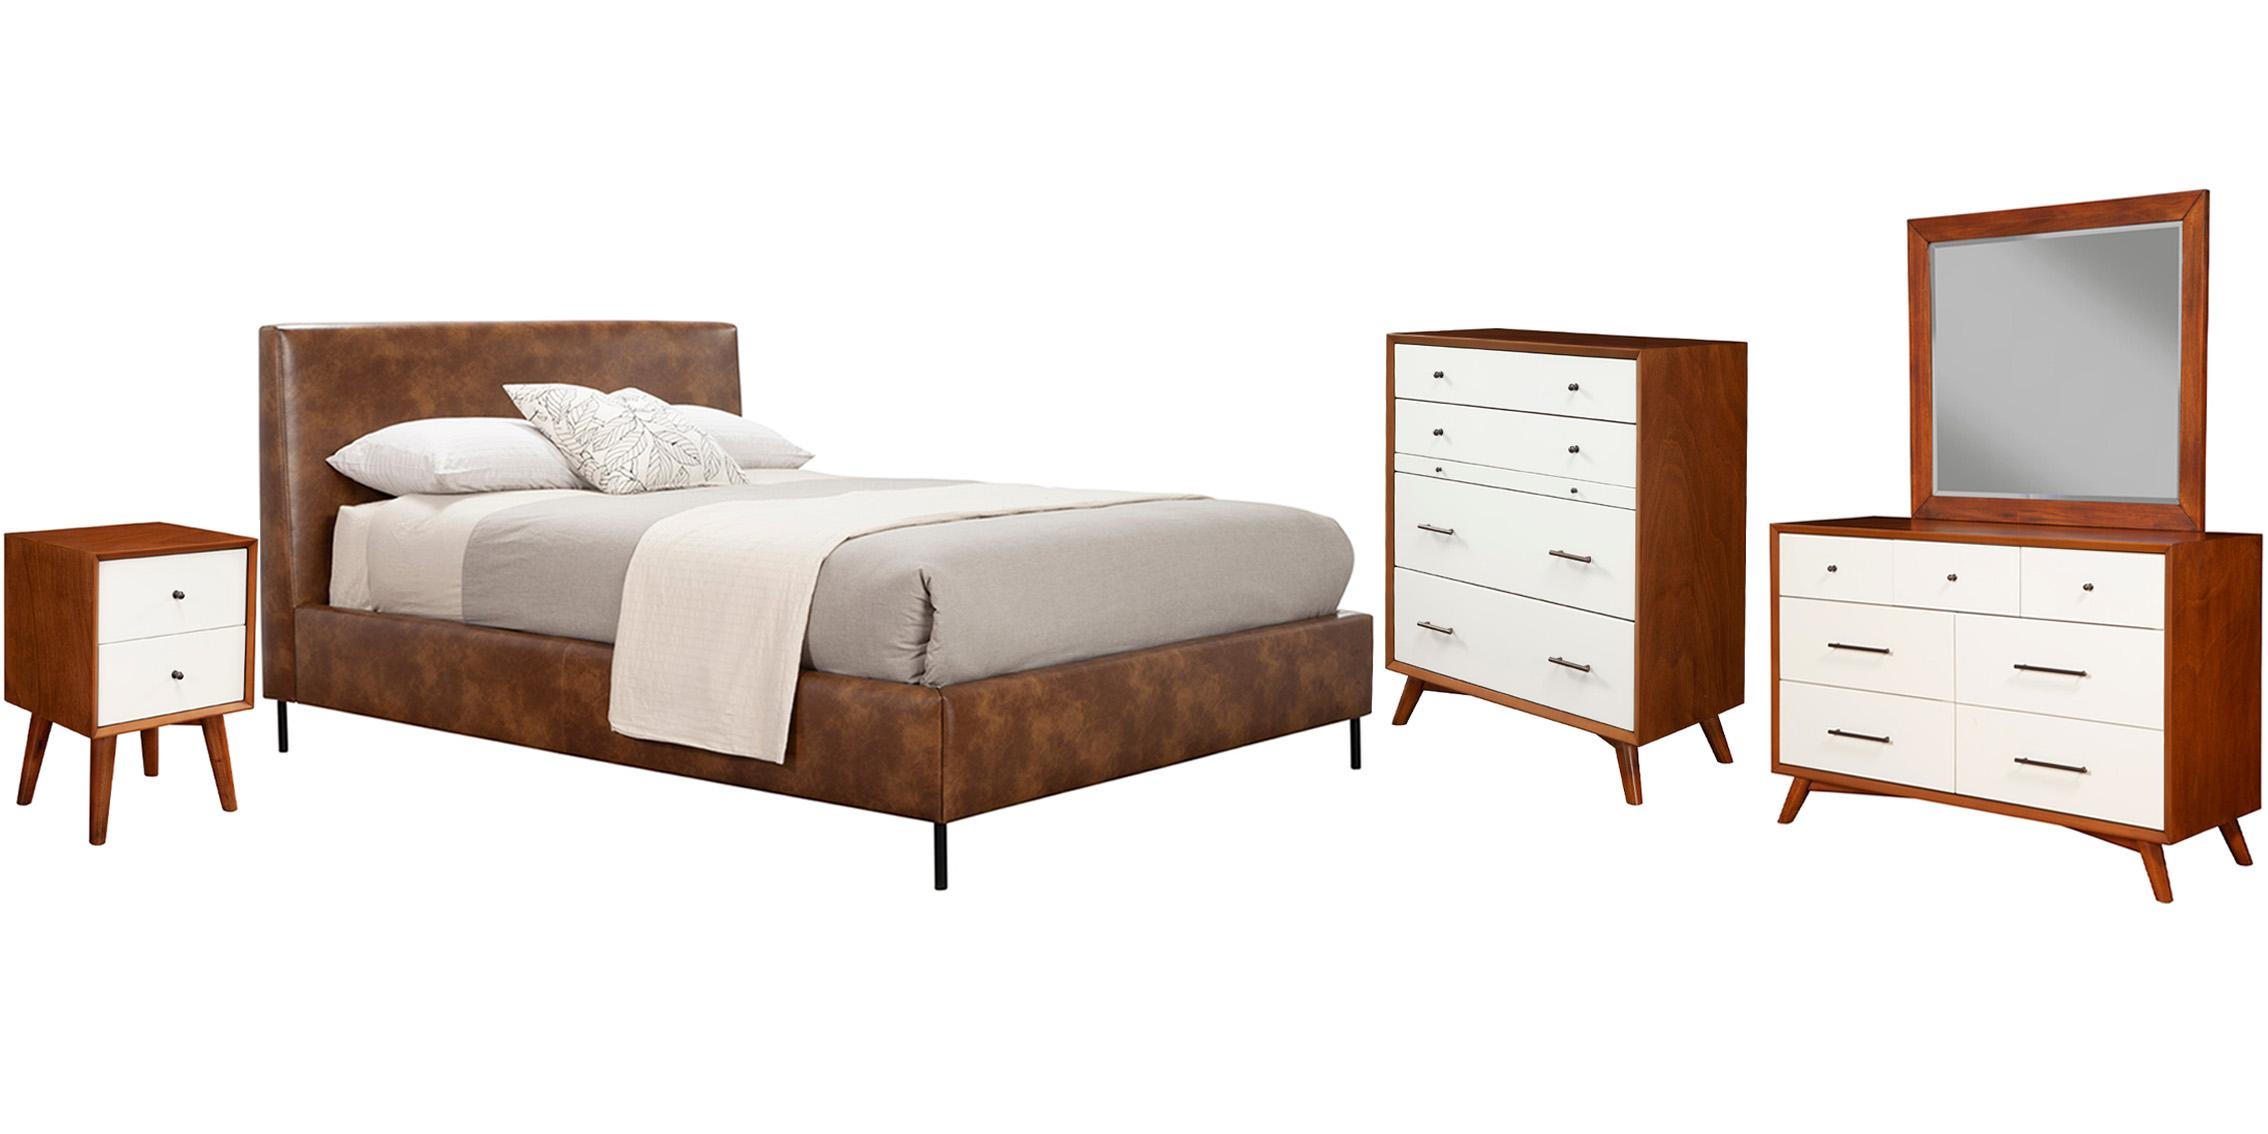 Modern, Rustic Platform Bedroom Set SOPHIA/FLYNN 6902CK-BRN-Set-5 in Brown Faux Leather